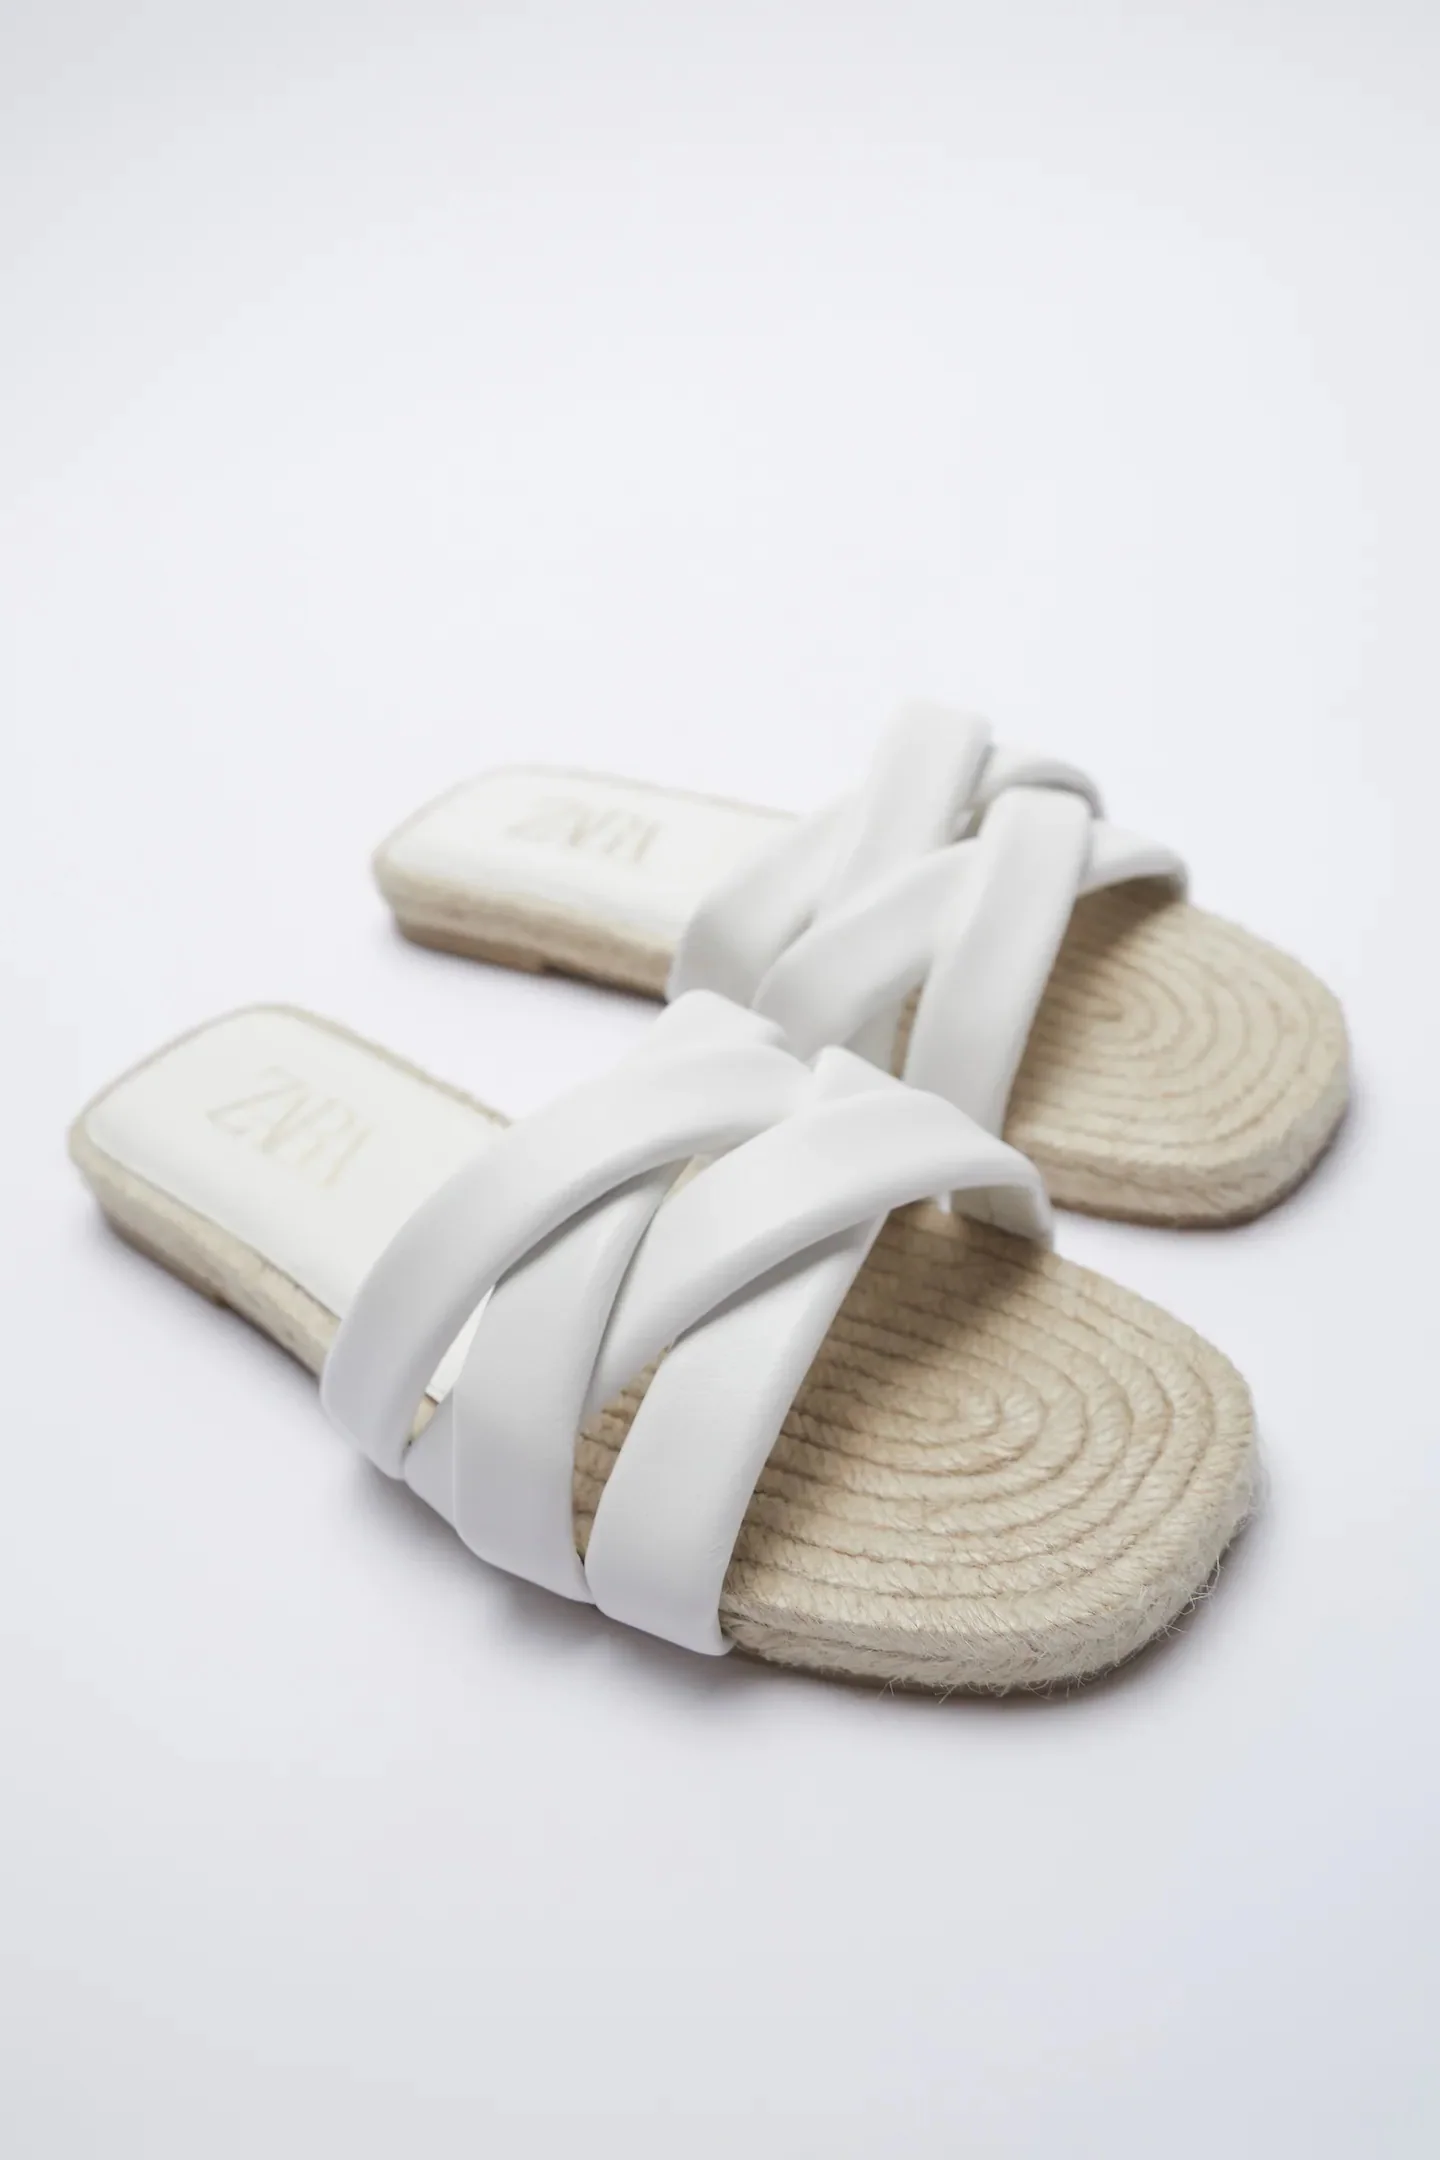 Fotos: Las sandalias blancas más cómodas y ponibles de Zara anticipan calor y ya nos hacen soñar con verano | Mujer Hoy